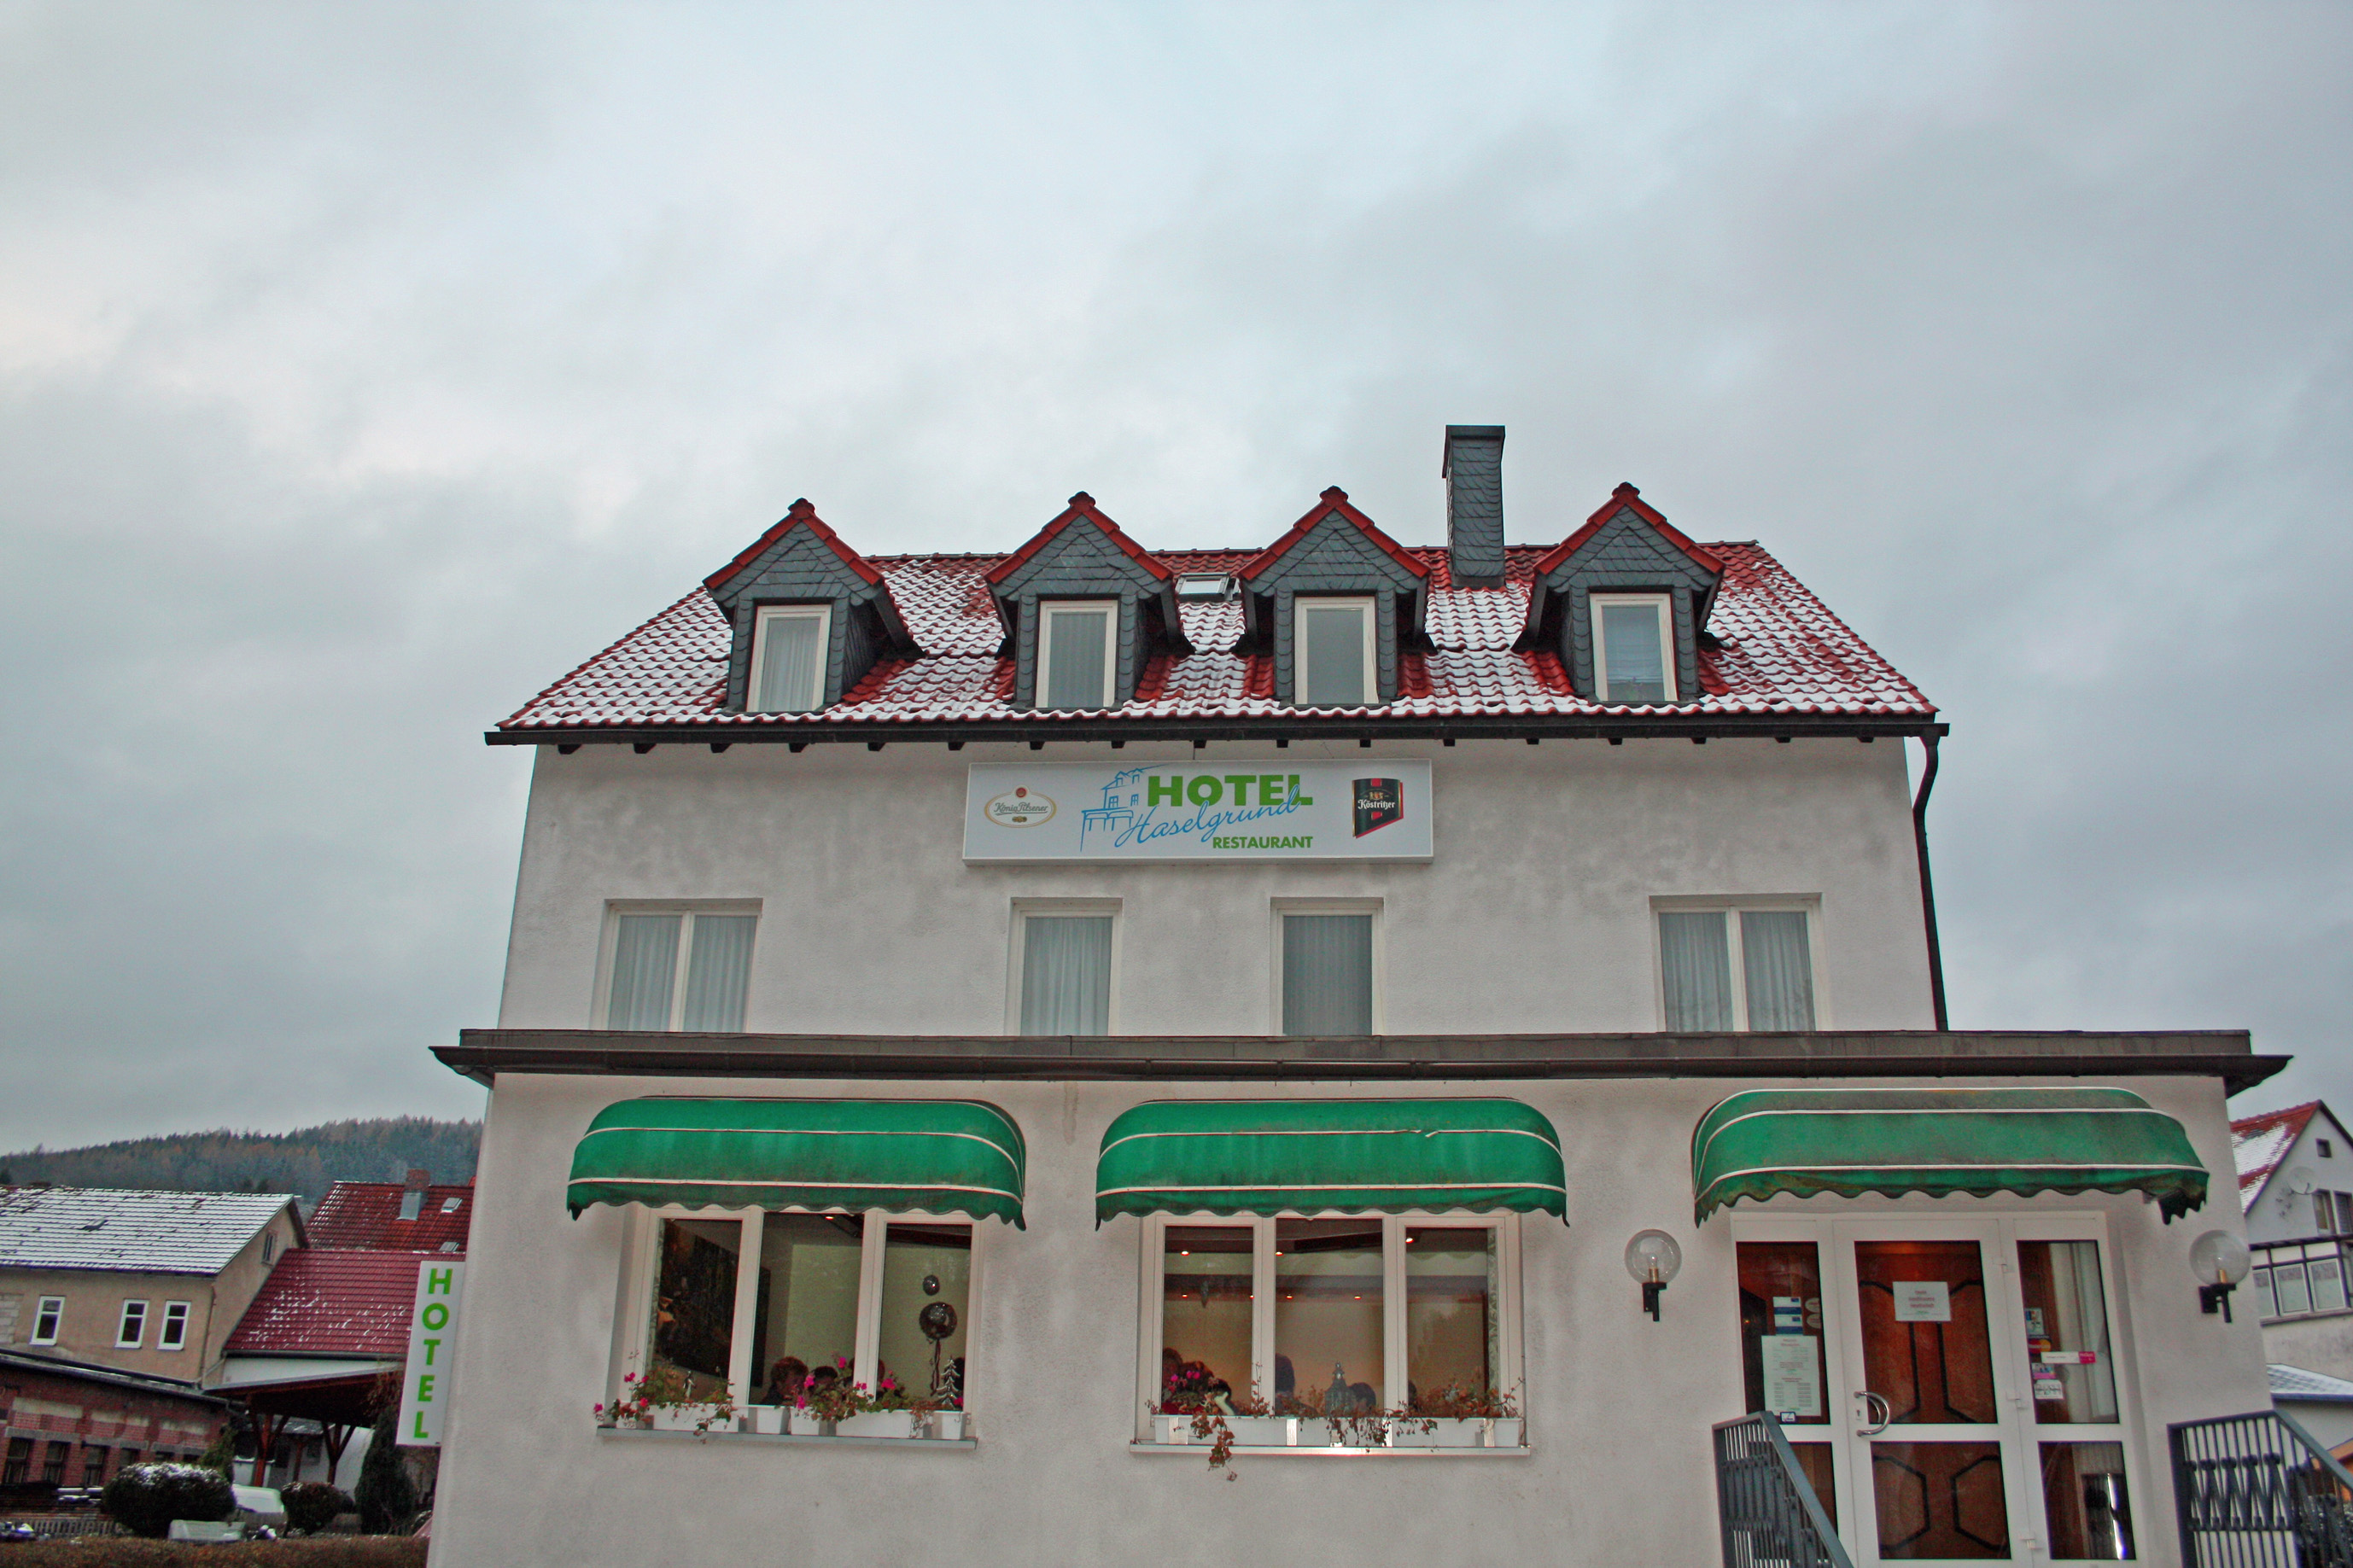 Hotel Haselgrund, Steinbach-Hallenberg.
